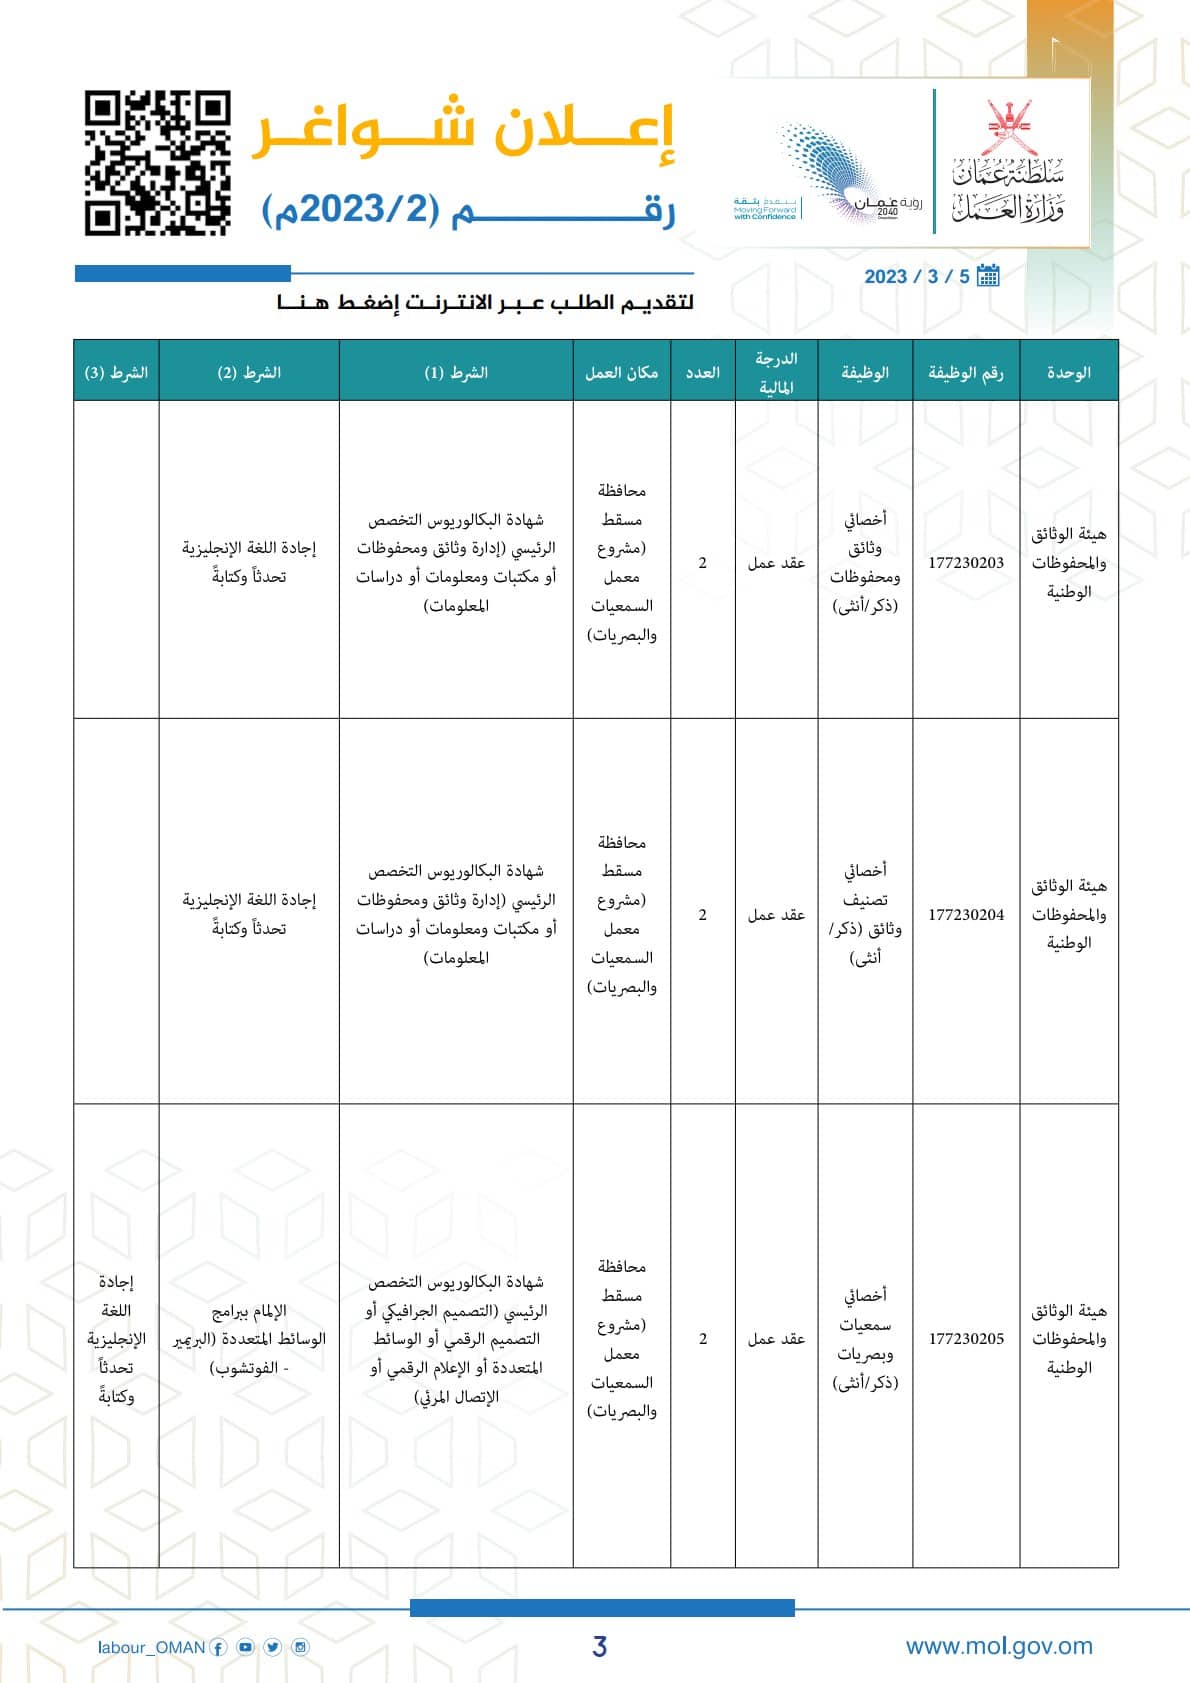 وزارة العمل في سلطنة عمان توفر أكثر من 70 وظيفة حكومية شاغرة لجميع الجنسيات